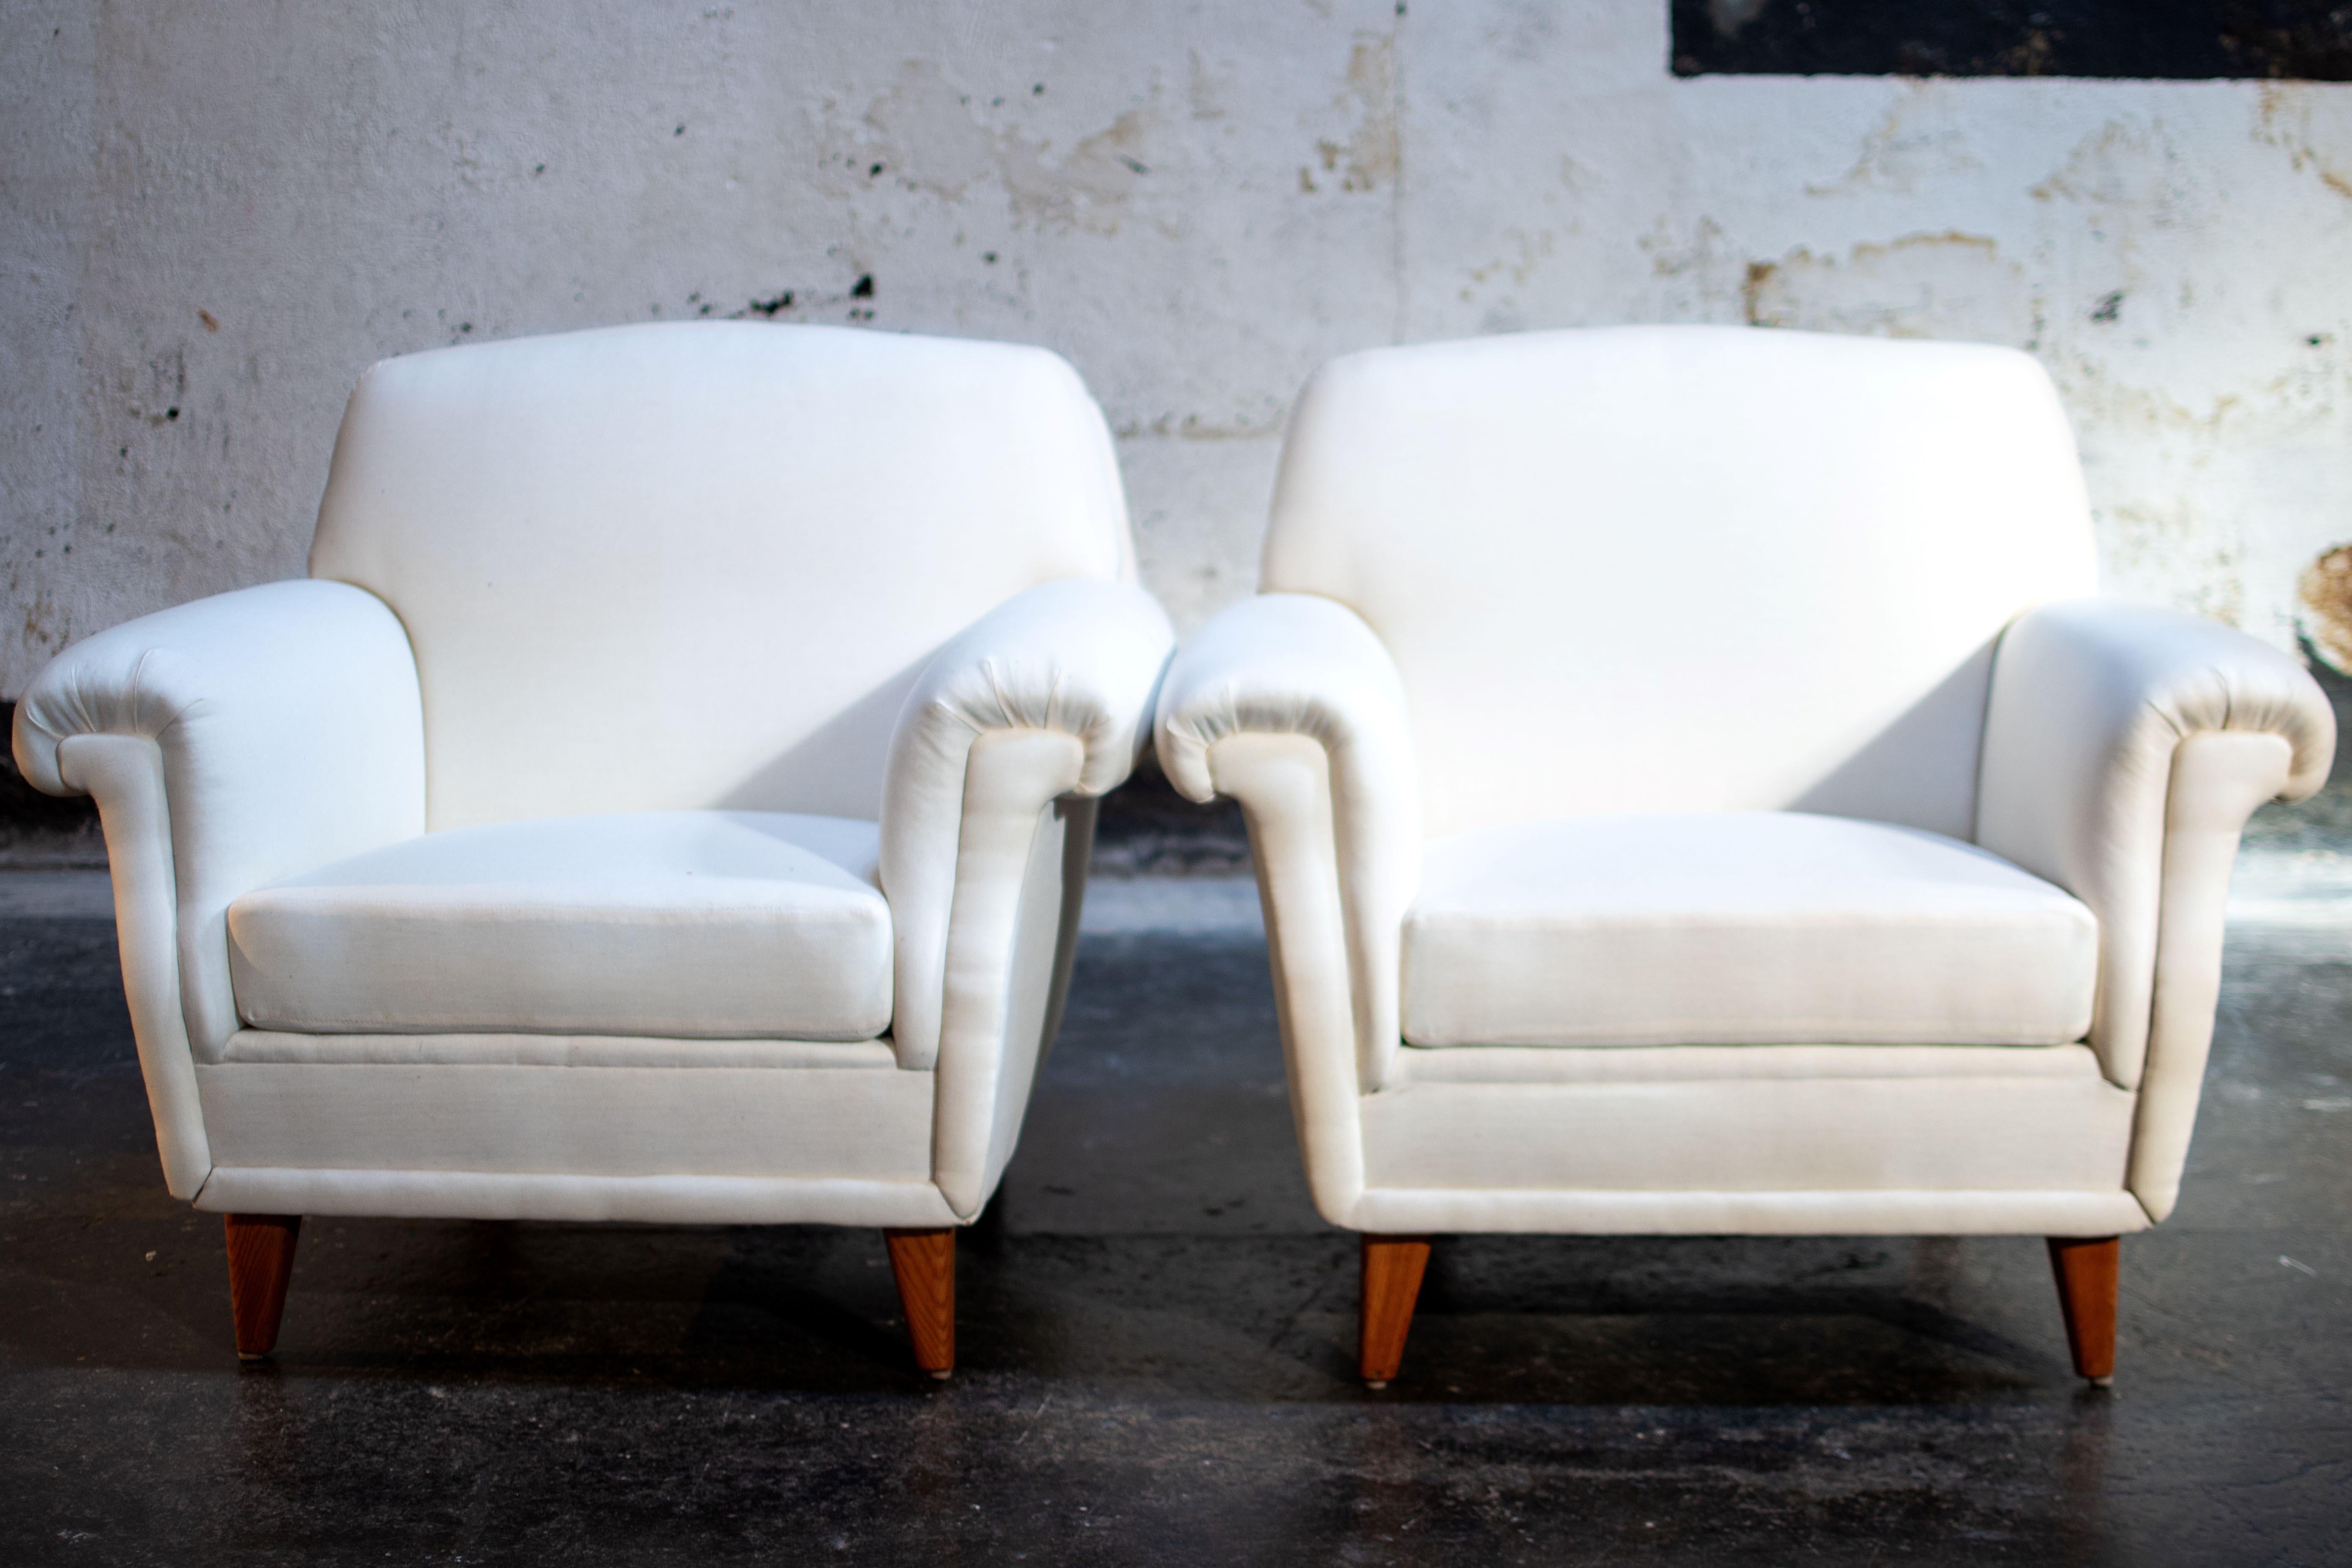 Paire de fauteuils club de style The Modern Scandinavian de la marque suédoise Broderna Anderssons. Broderna Anderssons fabrique des meubles depuis plus de 100 ans. Il s'agit d'une entreprise familiale qui met l'accent sur l'artisanat et les